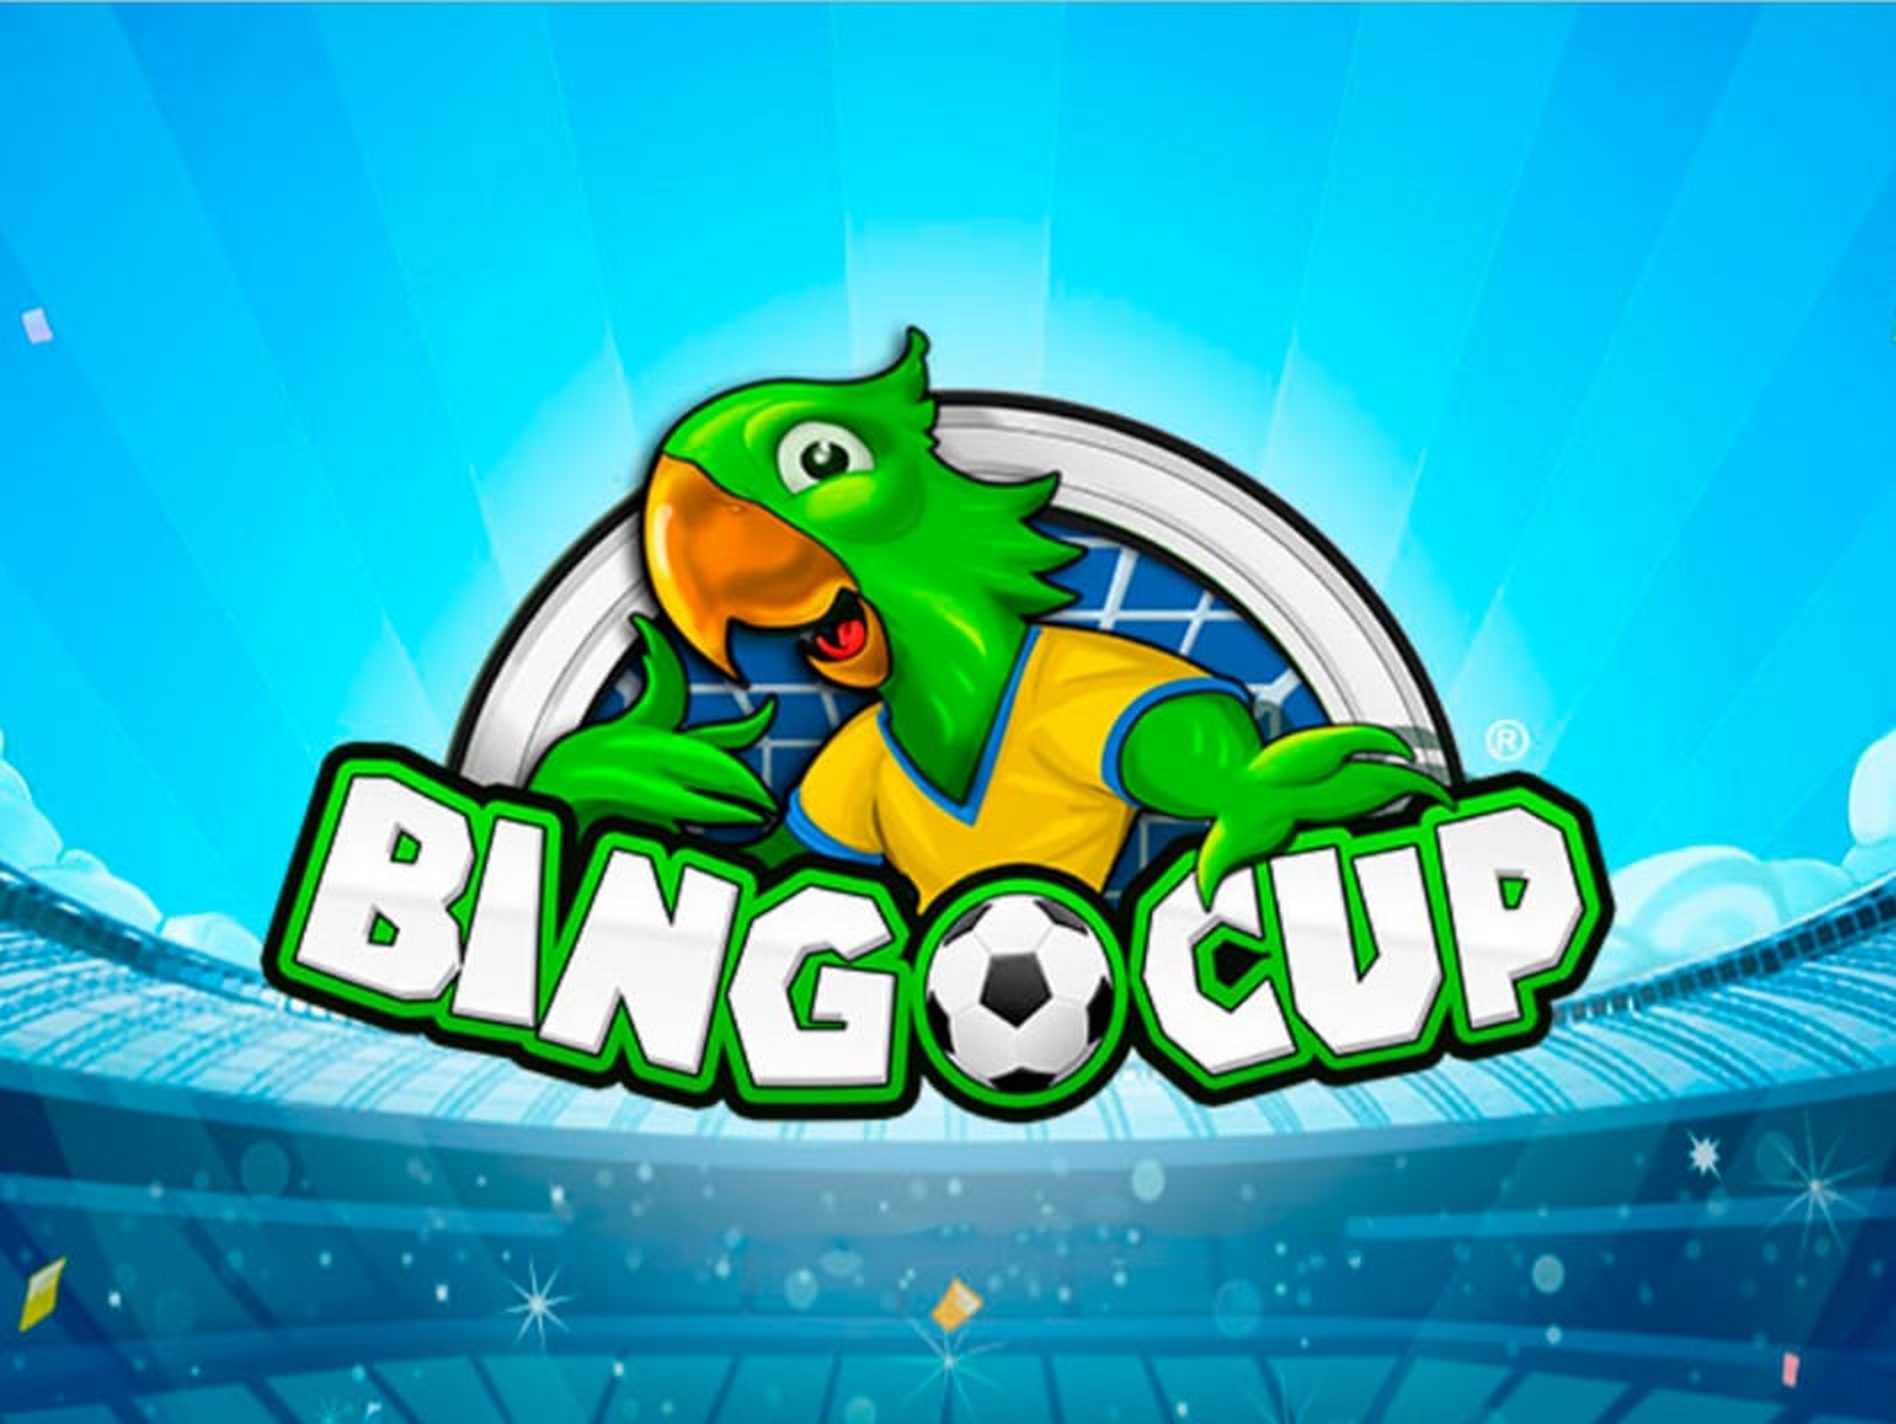 Bingo Cup demo